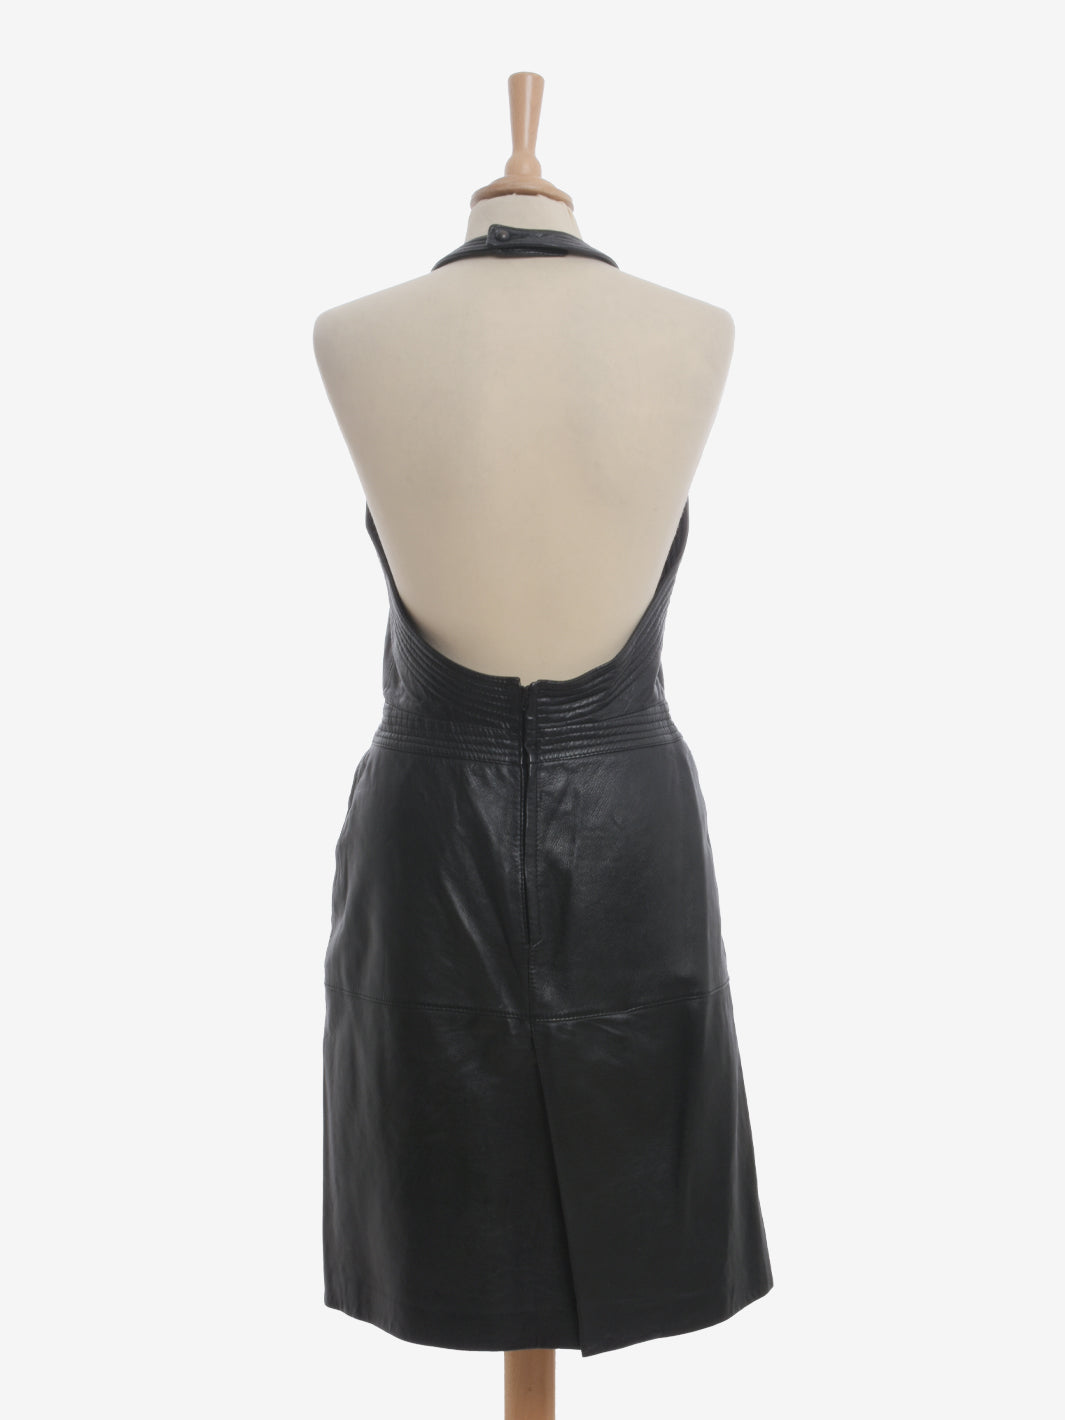 Gianfranco Ferré Leather Midi Dress - 80s